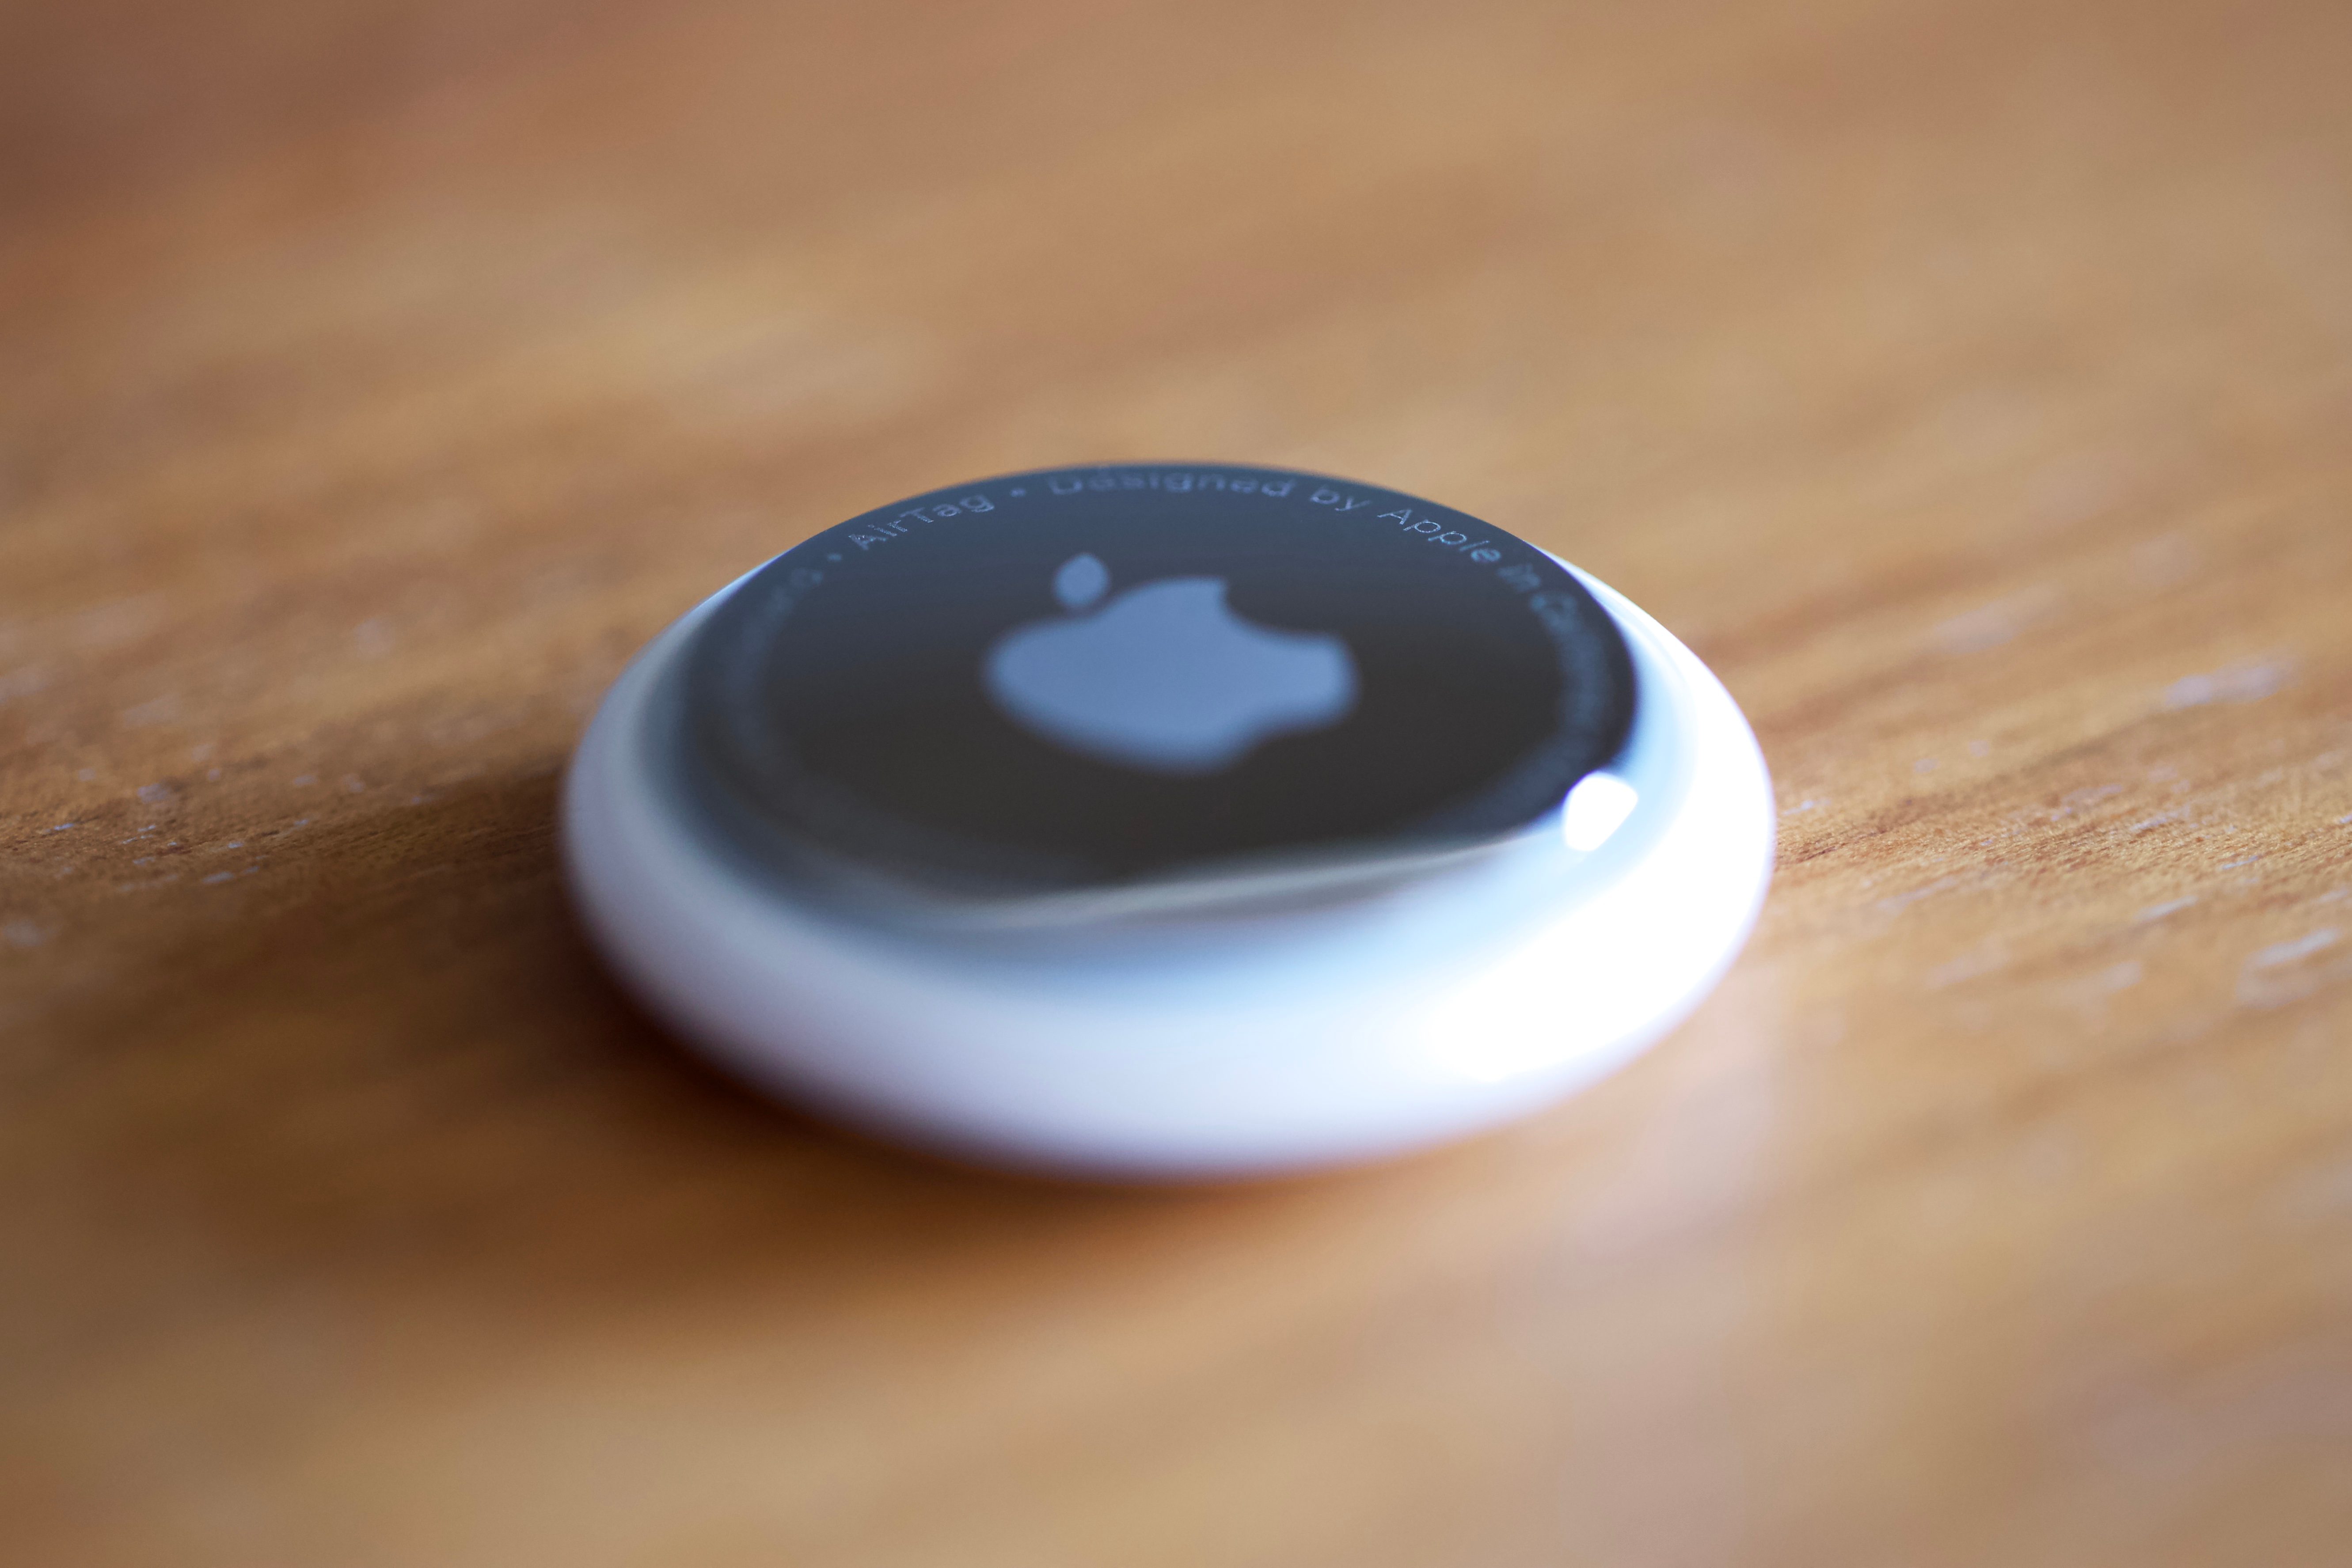 Das neue kleine Tracking-Device von Apple.